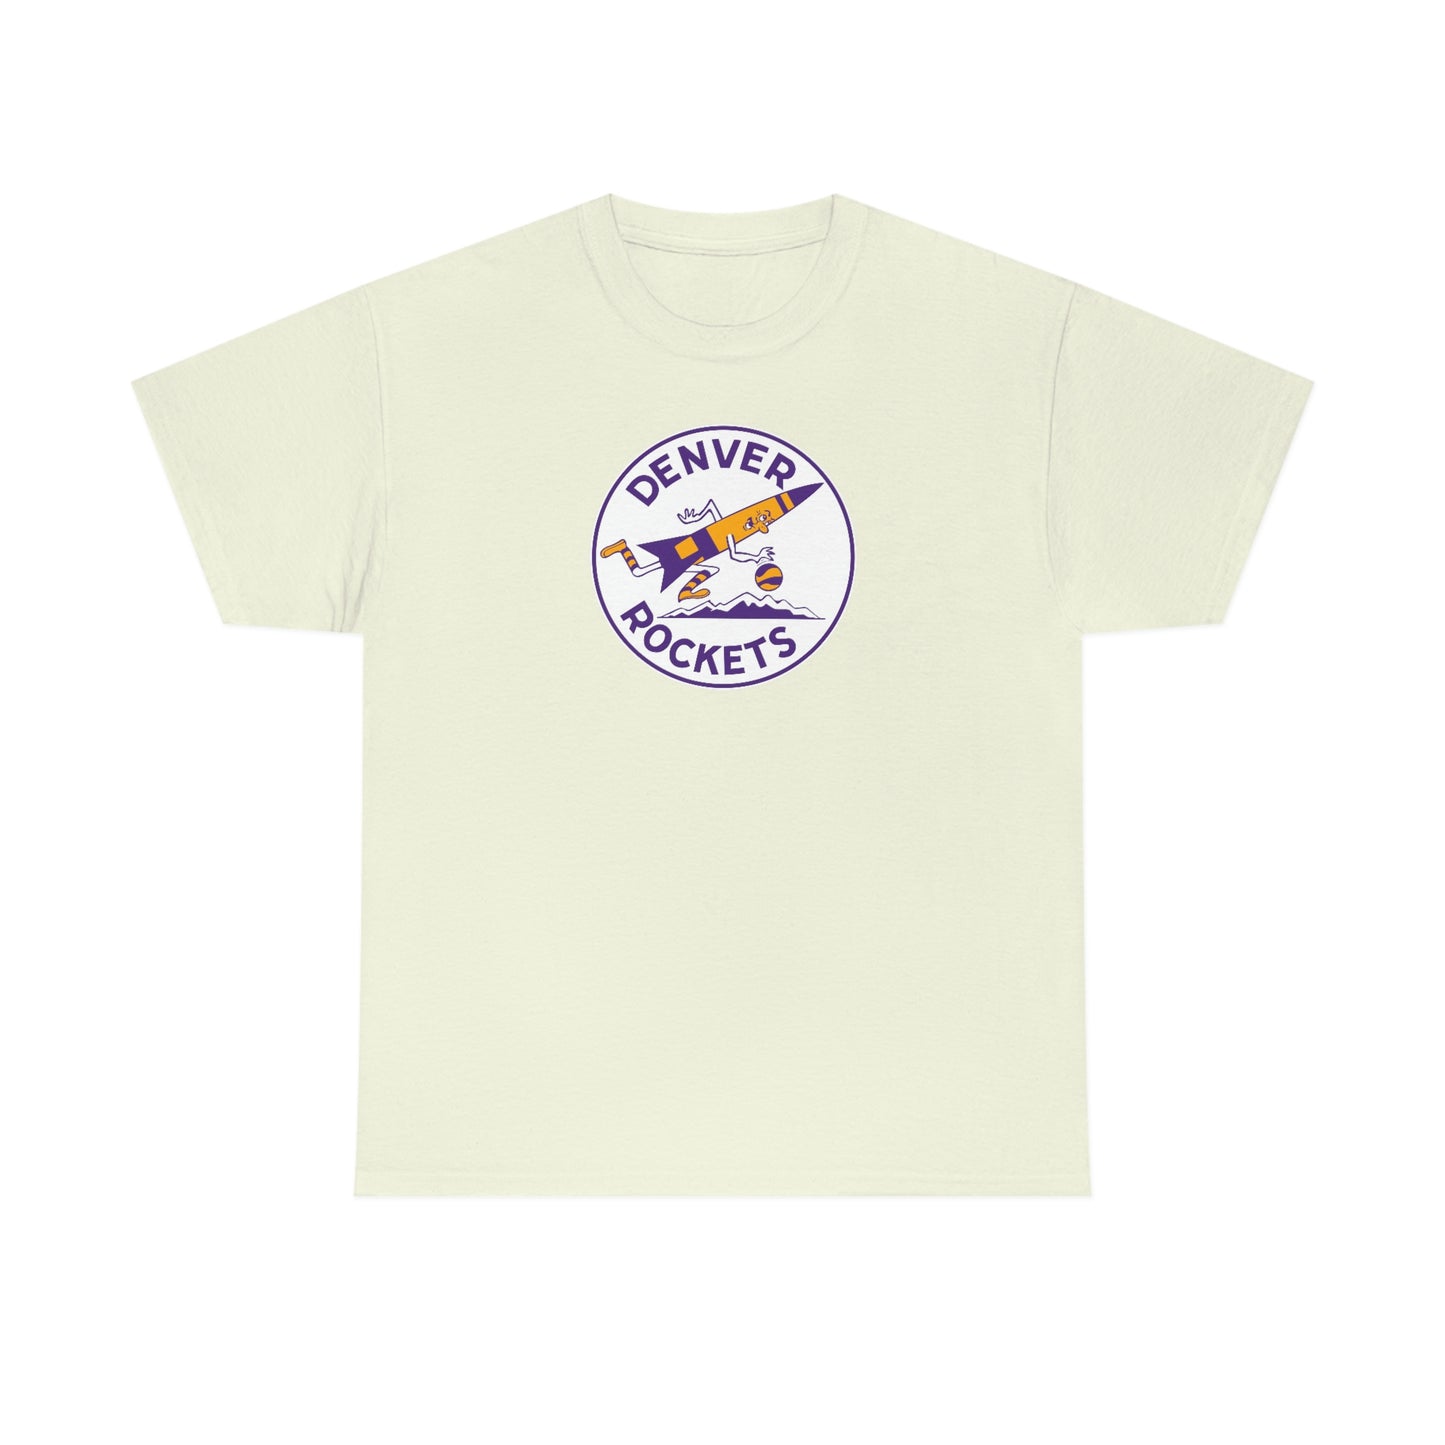 Denver Rockets T-Shirt